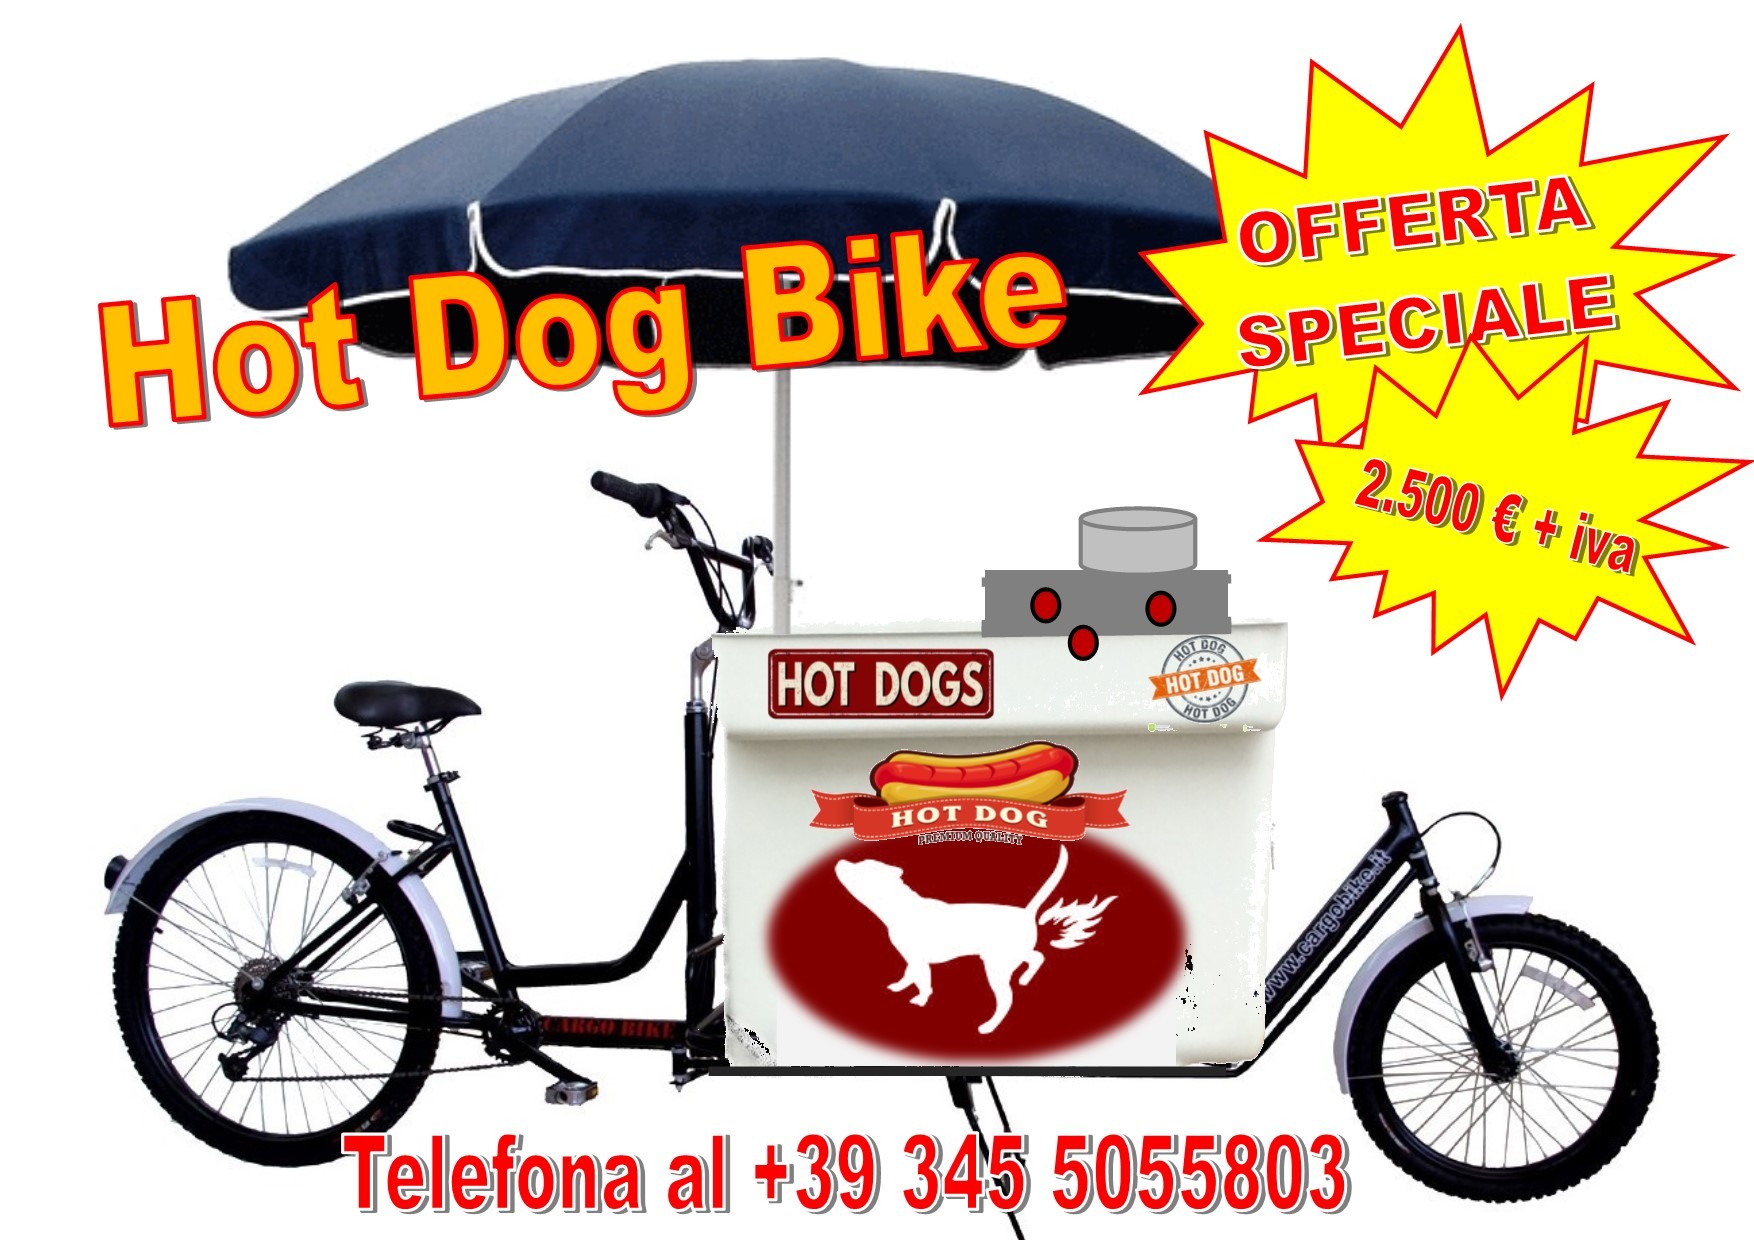 Hot_Dog_Bike_Wagon_OFFERTA_SPECIALE_con_Prezzo